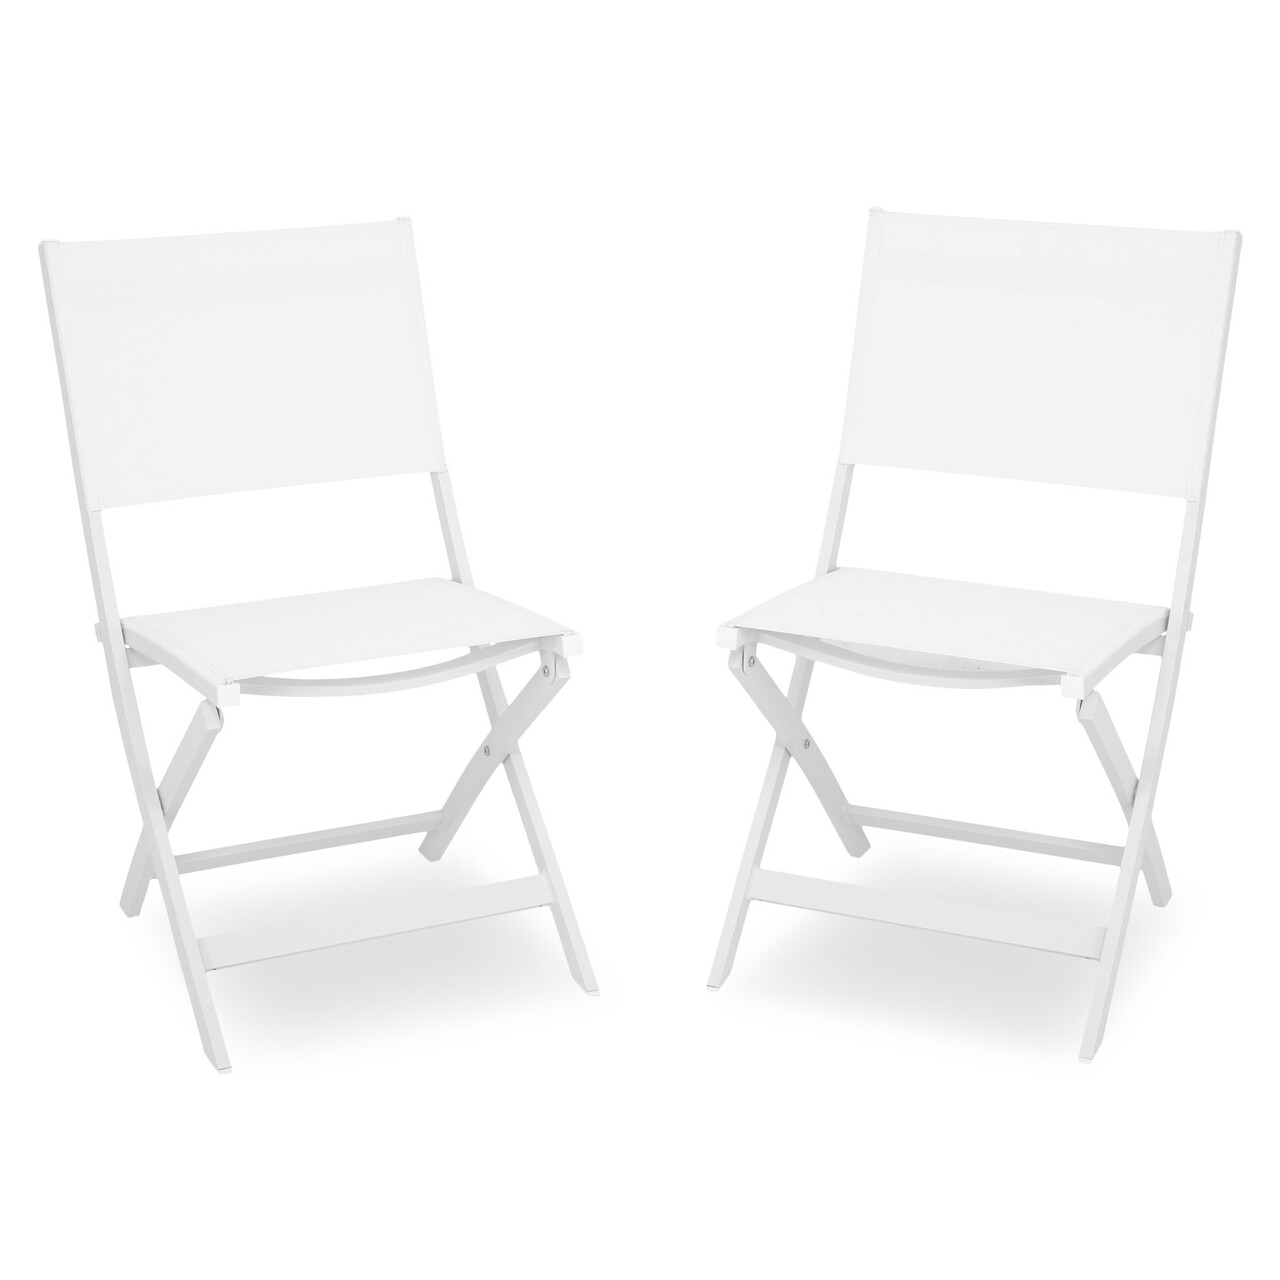 Maison breeze 2 db összecsukható szék, l.63 l.50 h.88, alumínium, fehér